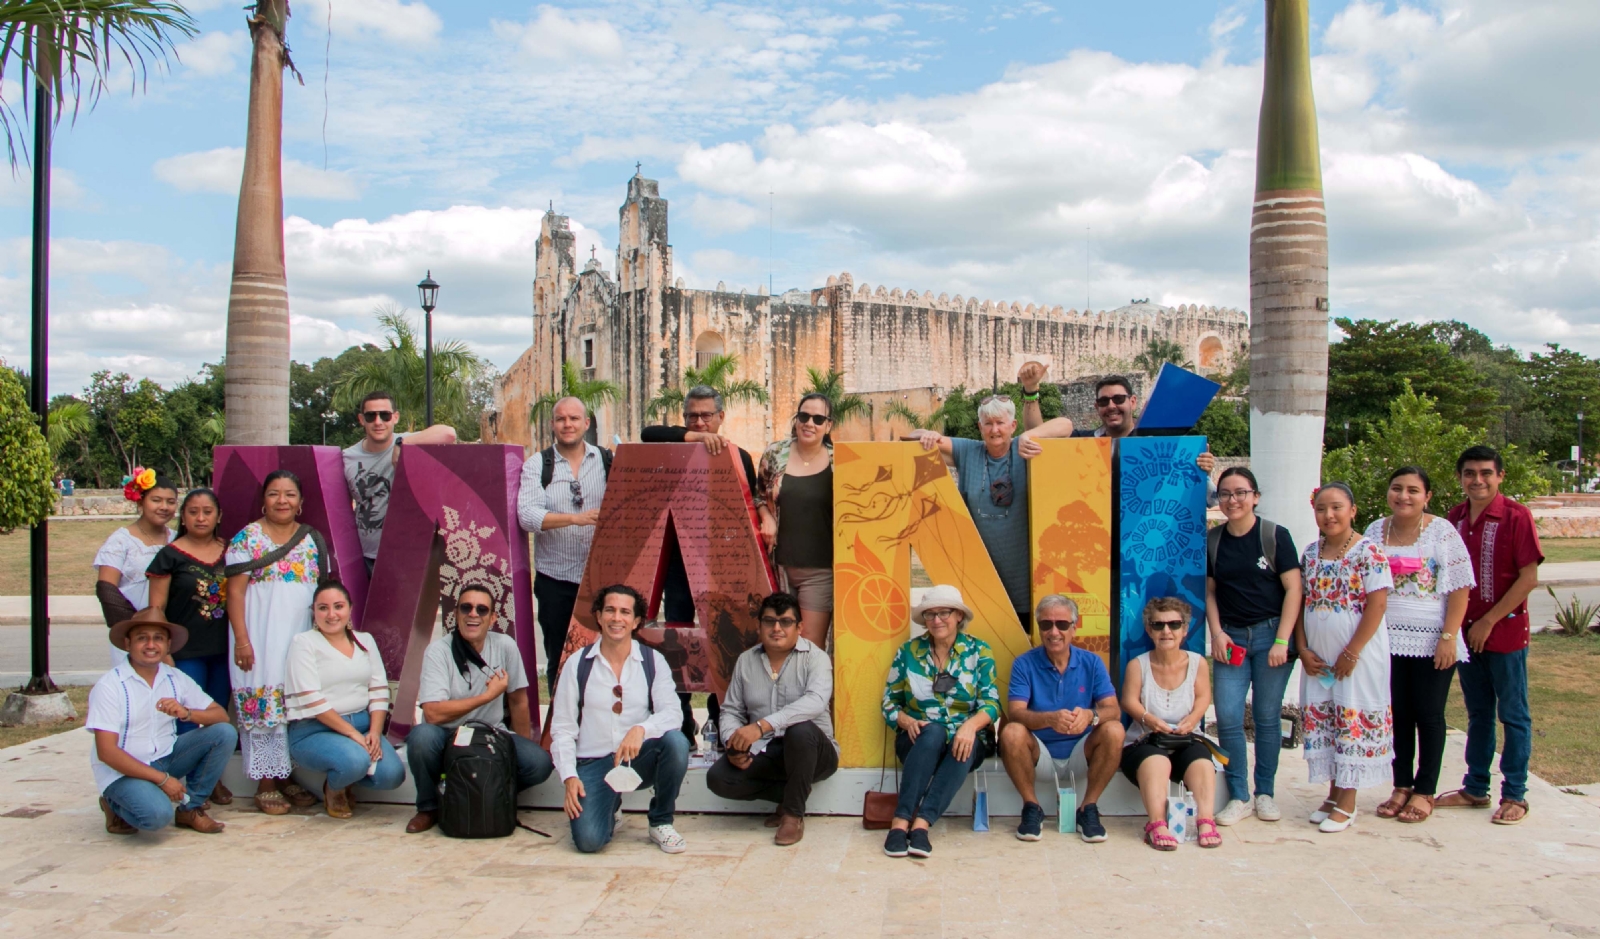 Hace unos días, Maní recibió a participantes del Tianguis Turístico de Mérida